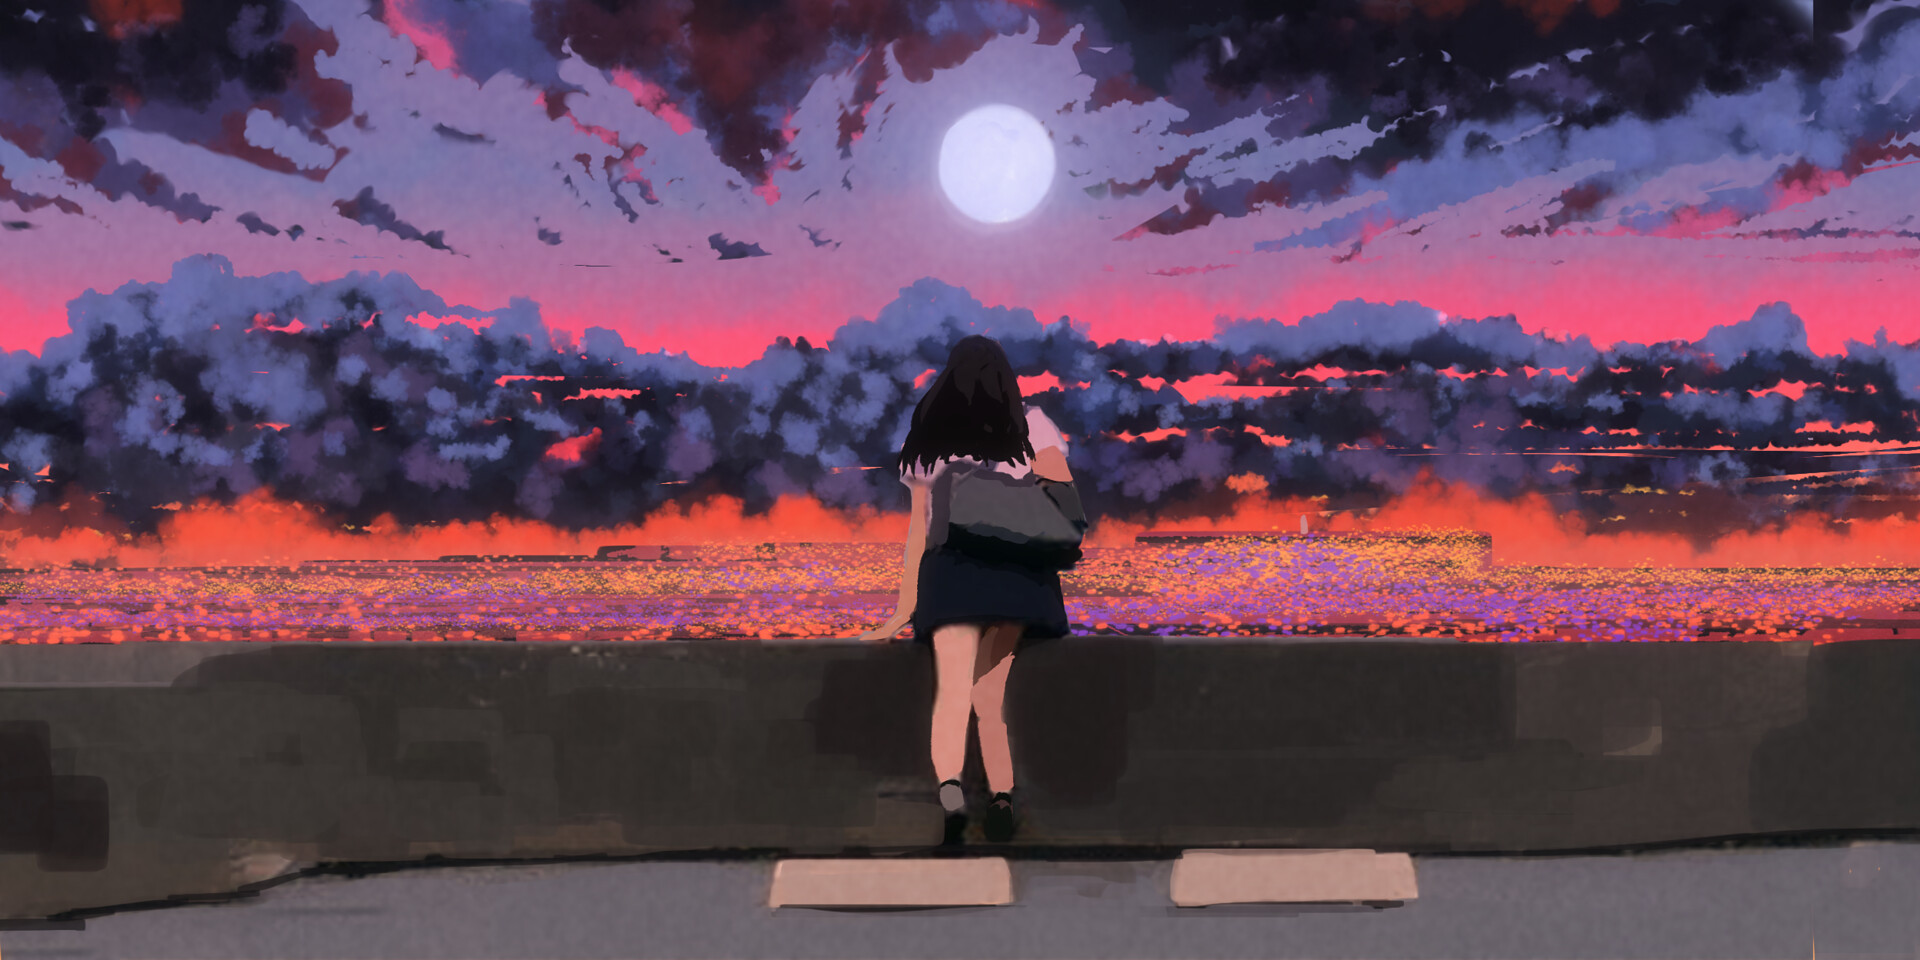 ArtStation - Anime Styled City Sunset | Anime Girl